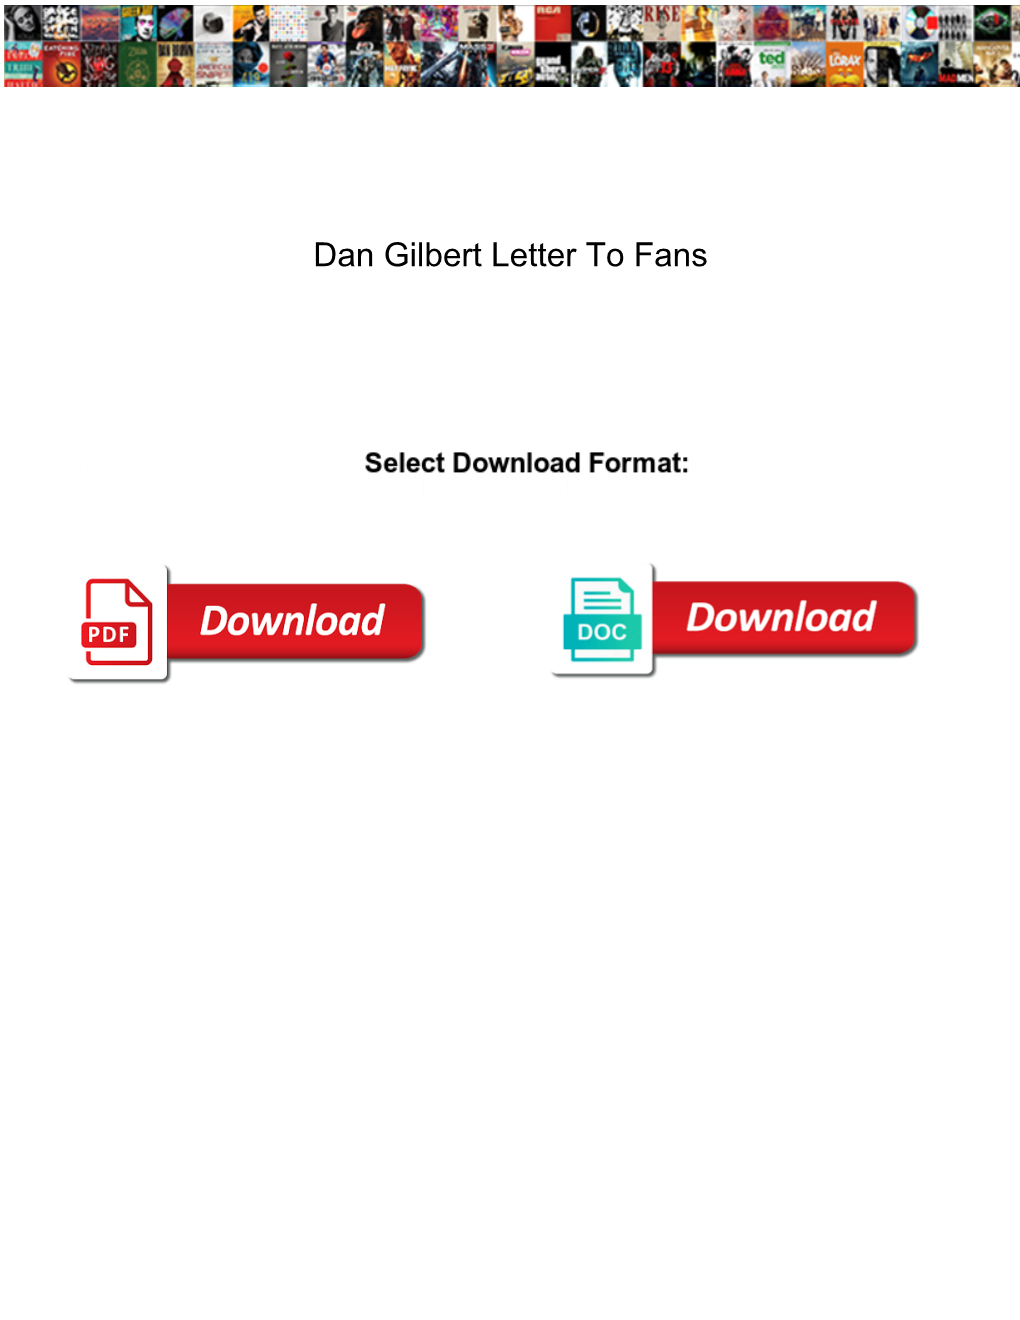 Dan Gilbert Letter to Fans